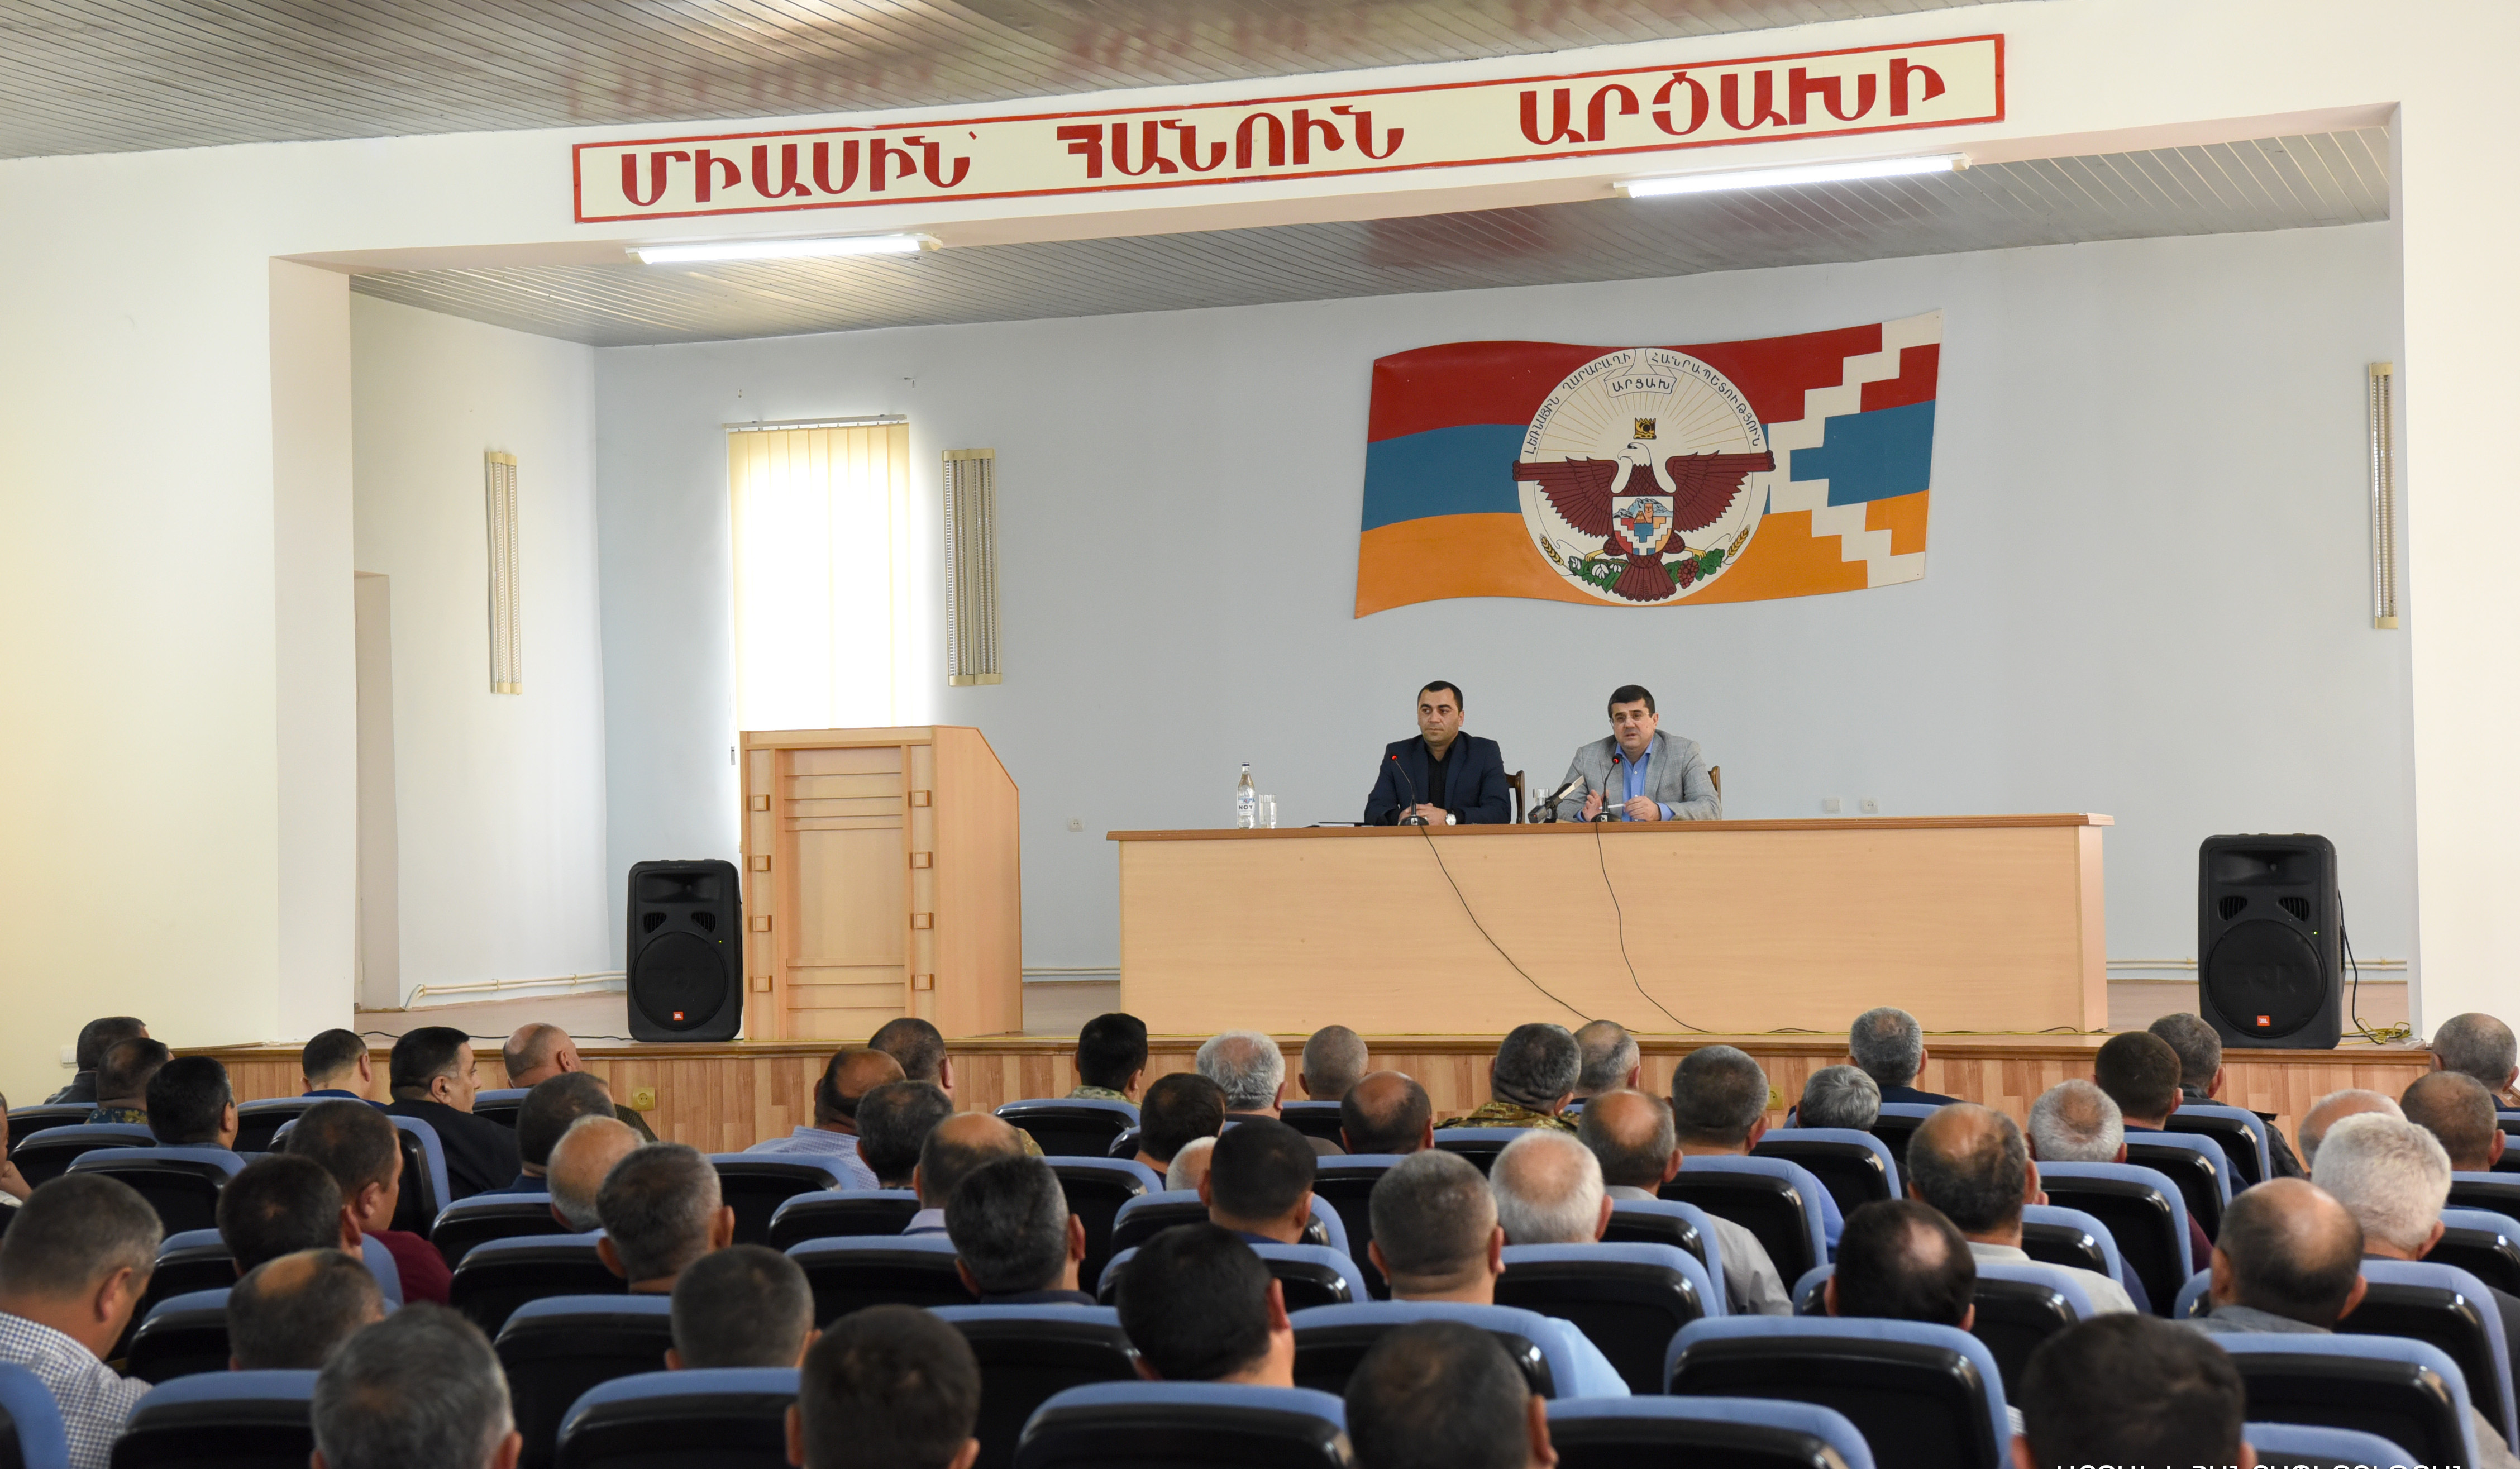 Переговоры с российским миротворческим командованием об отступлении азербайджанской стороны из села Парух и высоты Караглух продолжаются: Араик Арутюнян